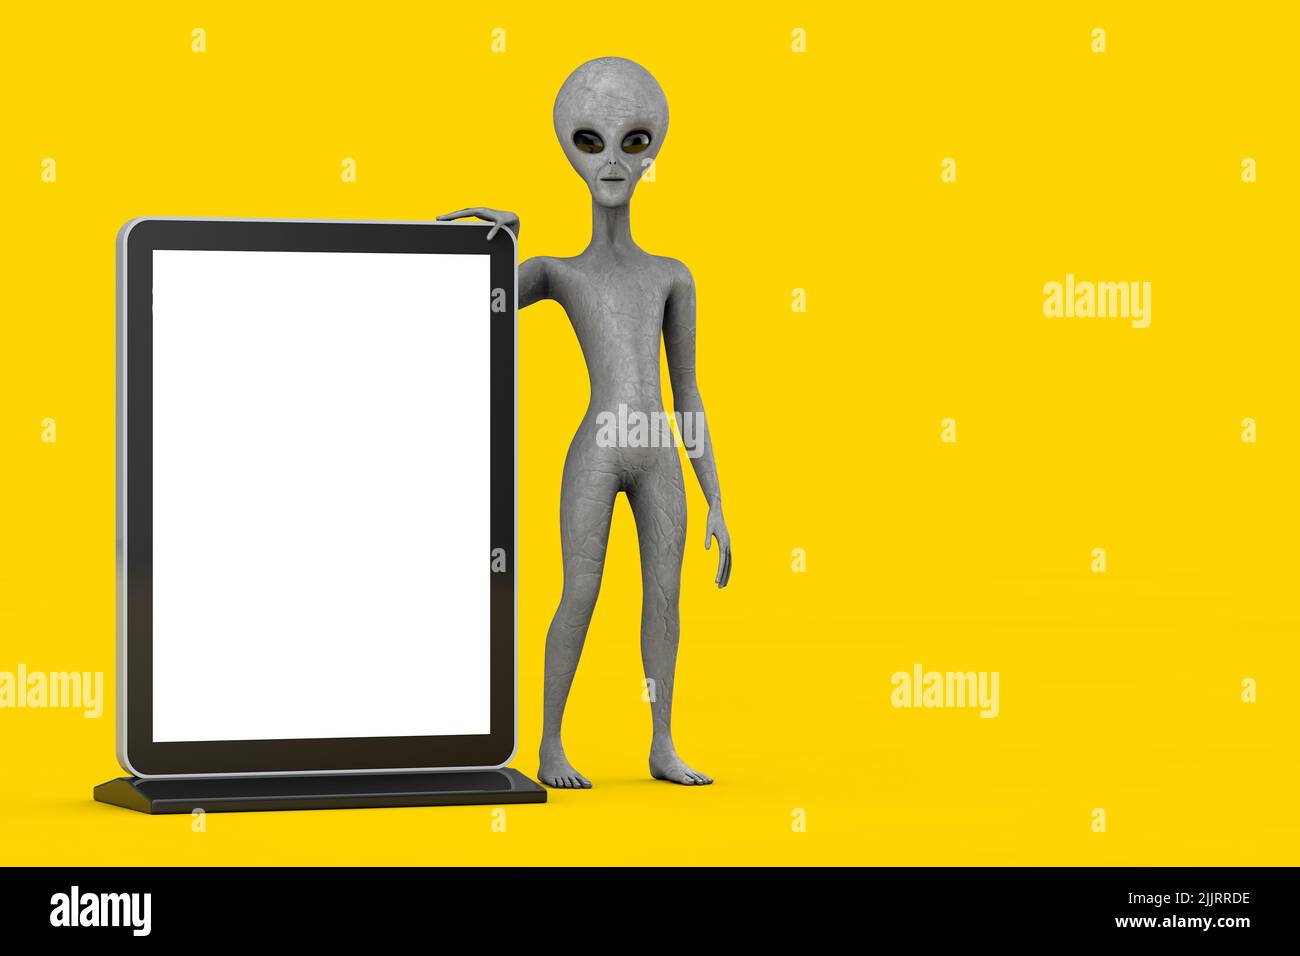 Scary Grey Humanoid Alien Cartoon Charakter Person Maskottchen mit Blank Trade Show LCD-Bildschirm-Display-Stand als Vorlage für Ihr Design auf einem gelben Hintergrund Stockfoto